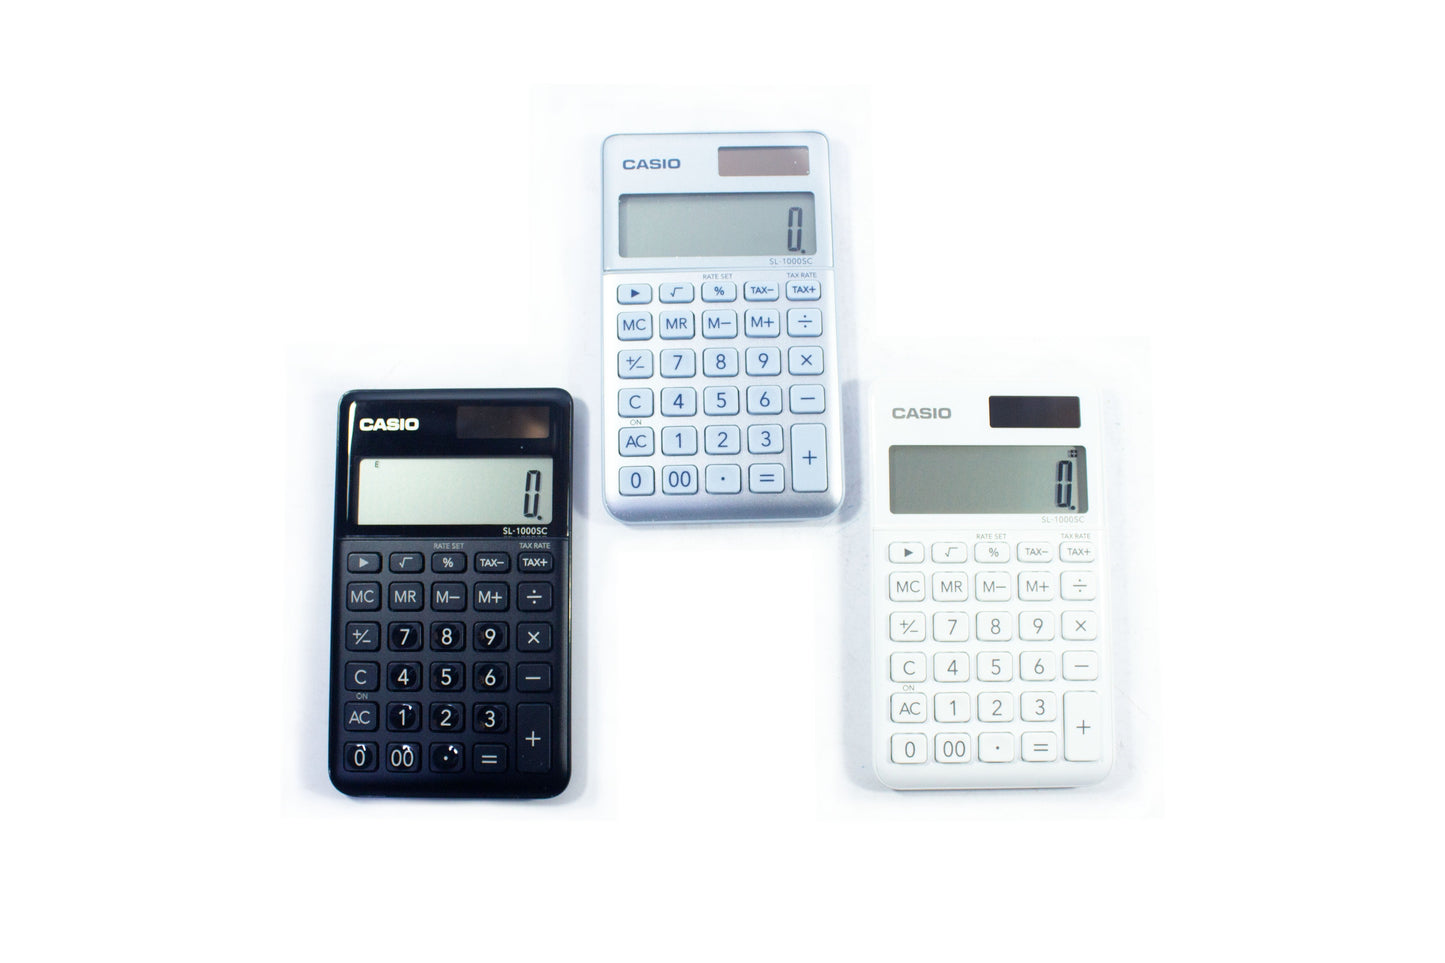 Casio Portable Calculator SL-1000SC